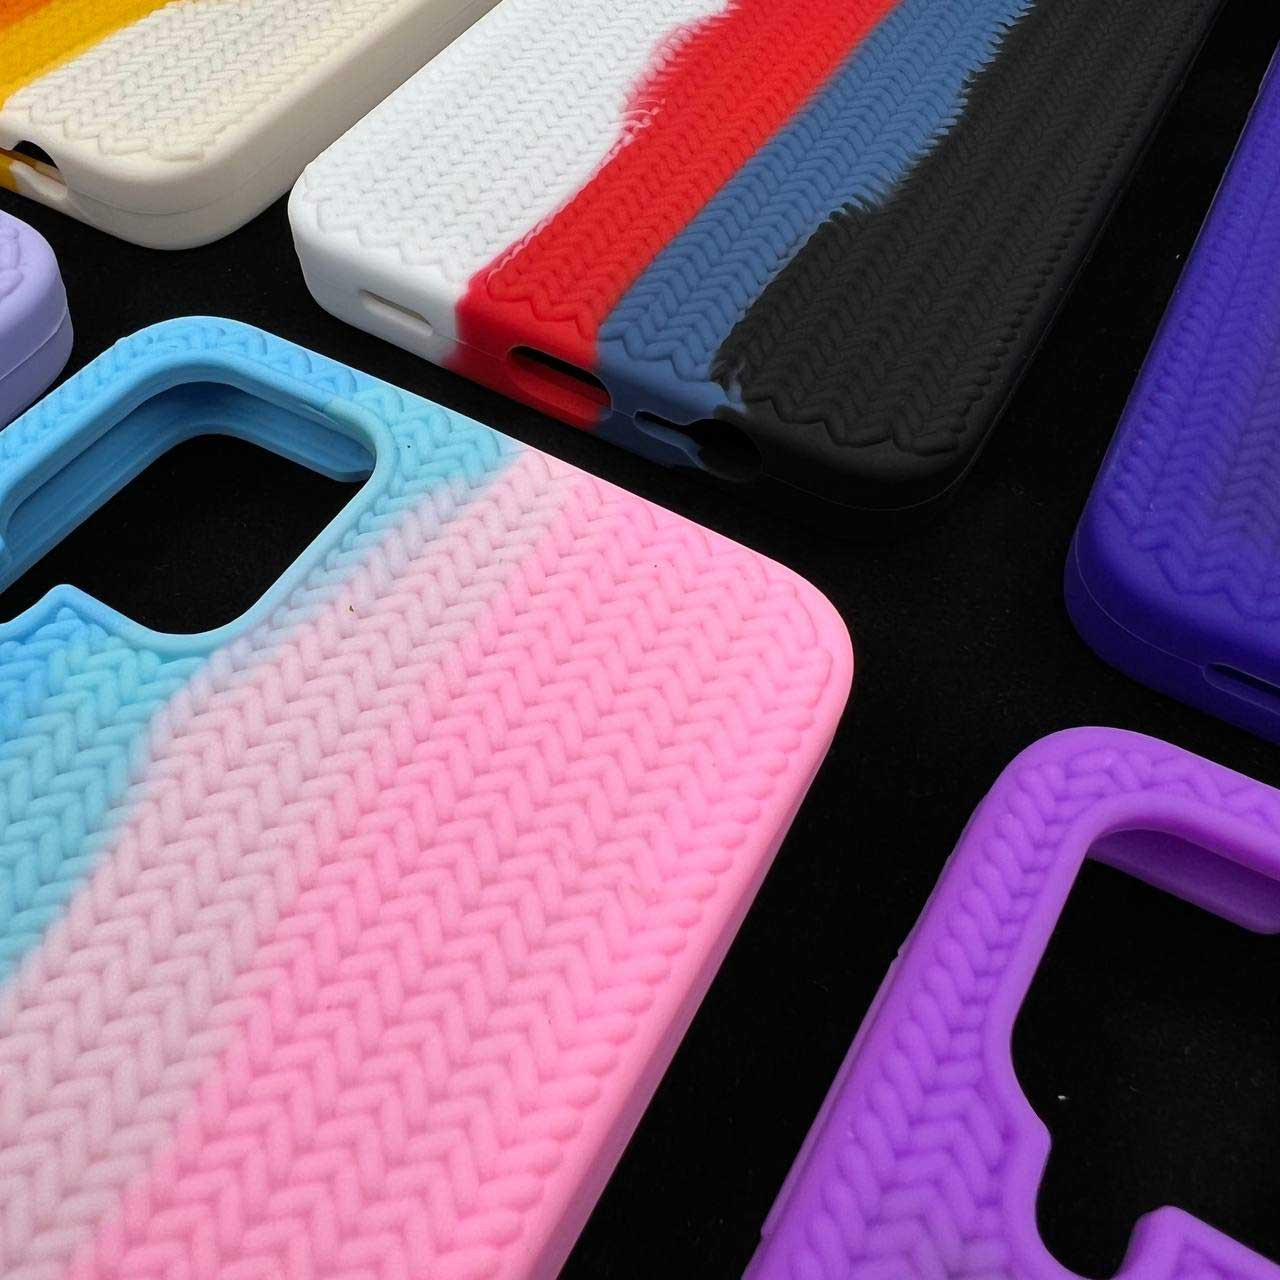 قاب سیلیکونی طرح بافت رنگین کمانی سامسونگ Galaxy A52 / A52s